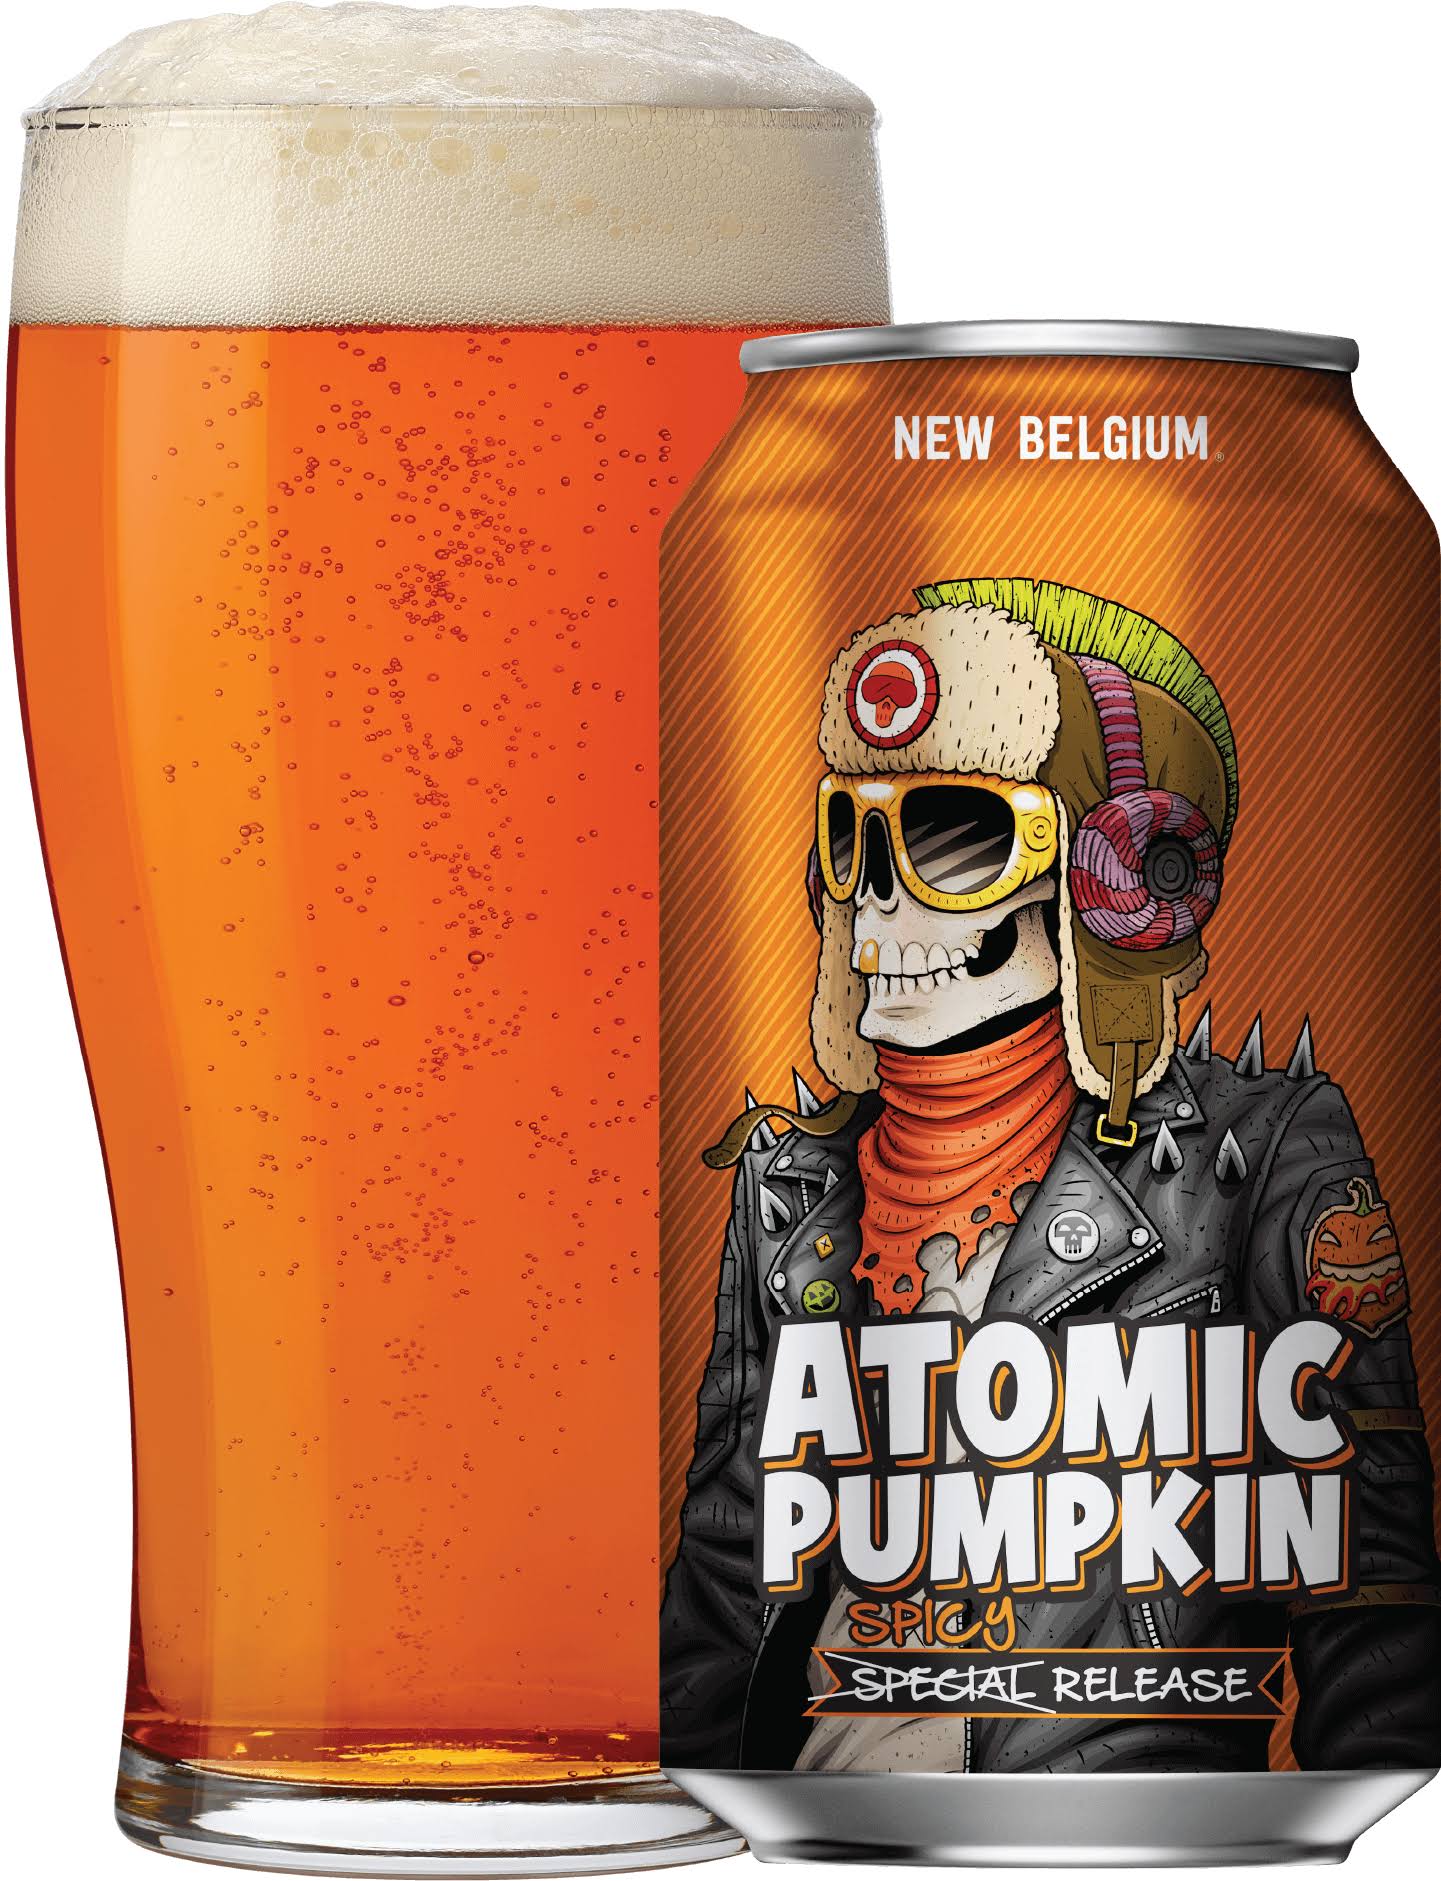 New Belgium Voodoo Ranger Beer, Atomic Pumpkin, Spicy Release - 6 pack, 12 oz cans